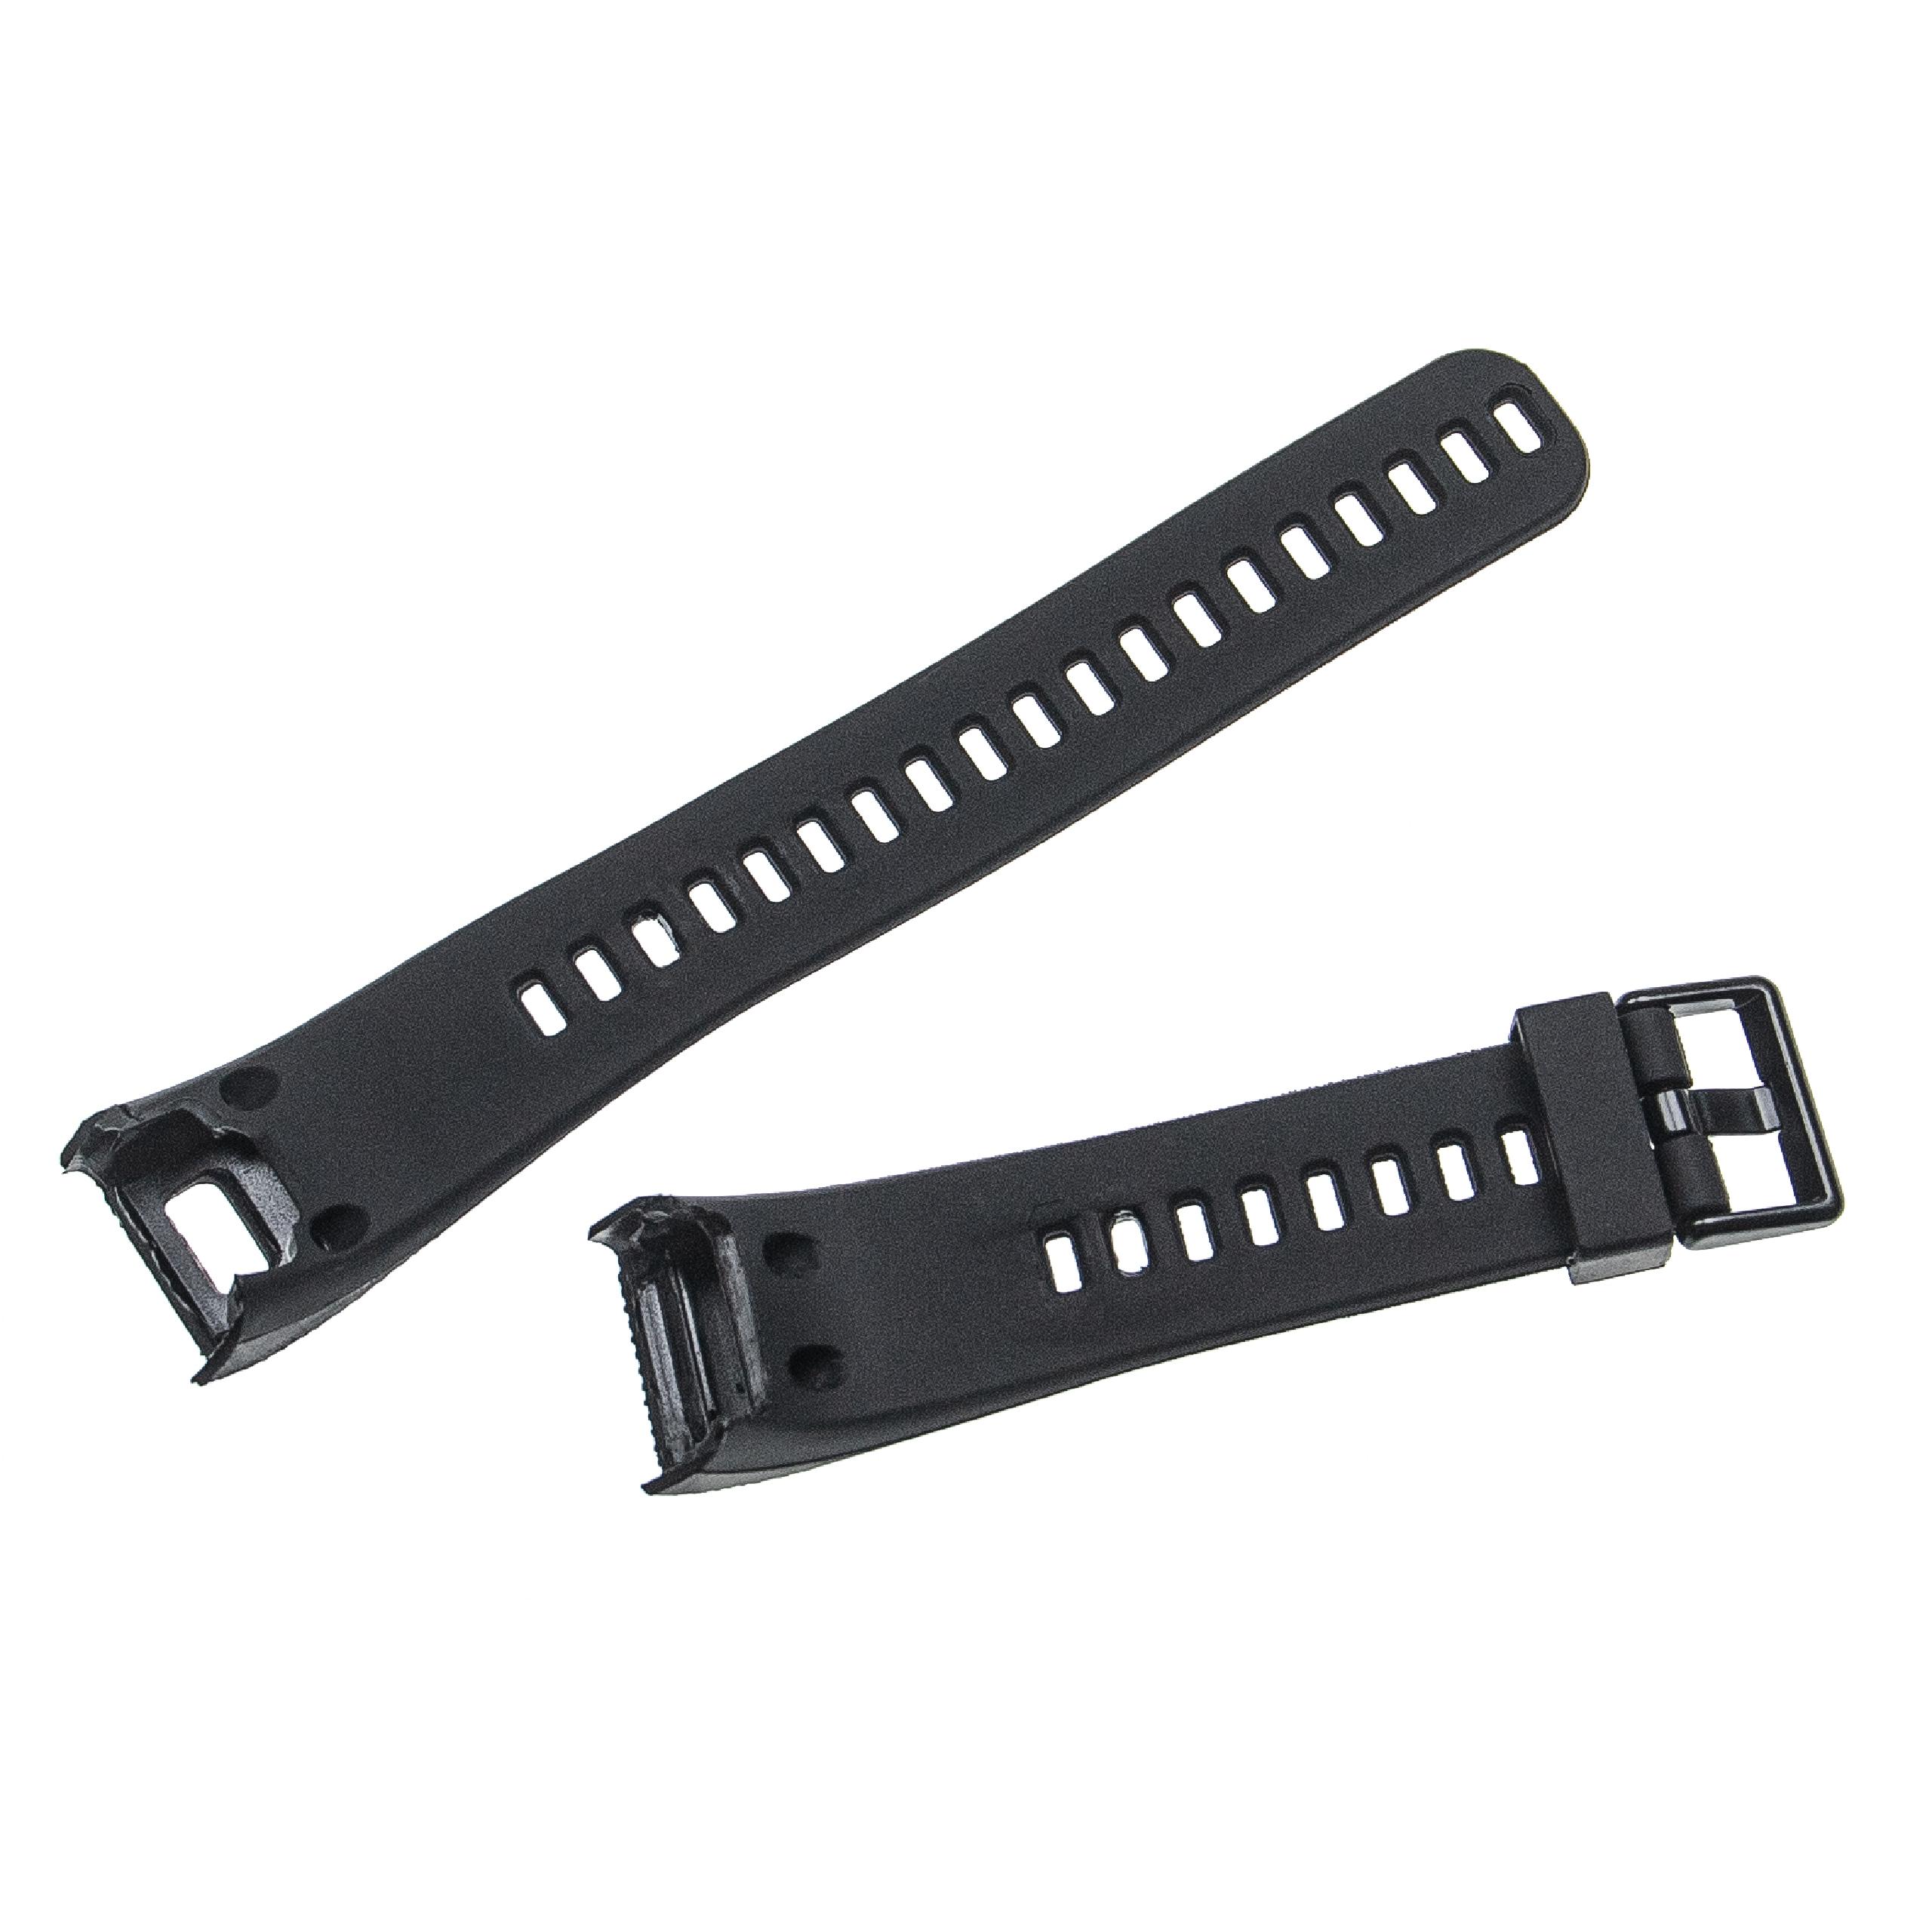 Armband für Garmin Vivosmart Smartwatch - 12,7 + 8,8 cm lang, 20mm breit, TPU, schwarz